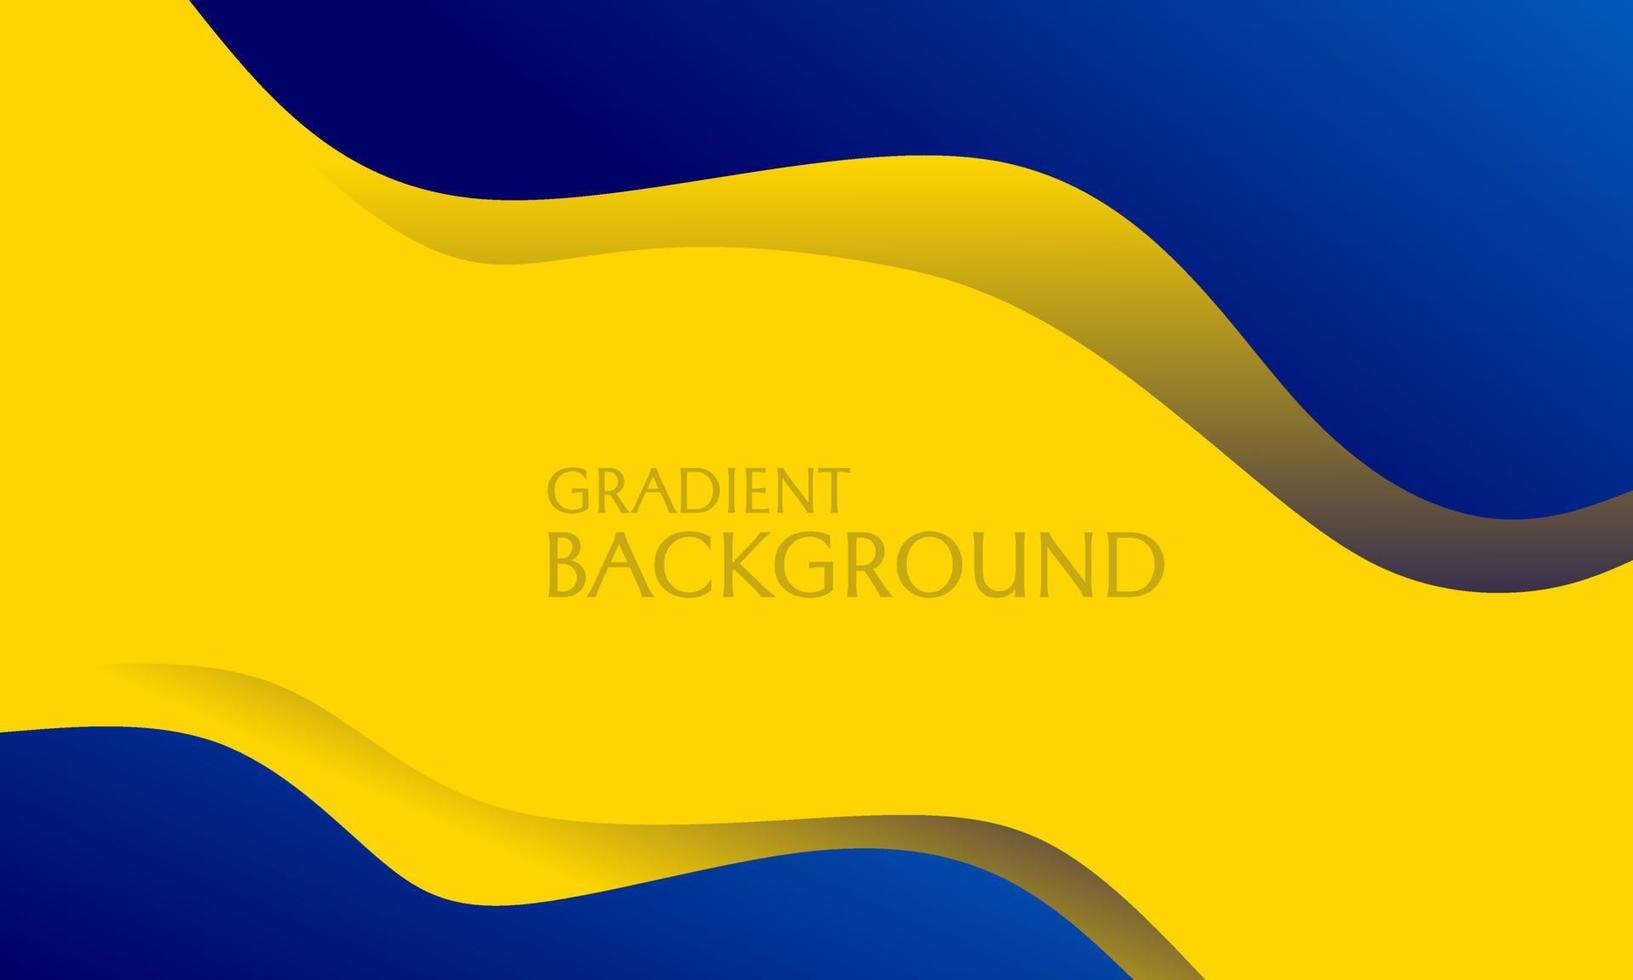 arrière-plan simple dans un style moderne et dynamique de couleur bleue et jaune. utilisé pour concevoir des bannières, des affiches, des dépliants vecteur